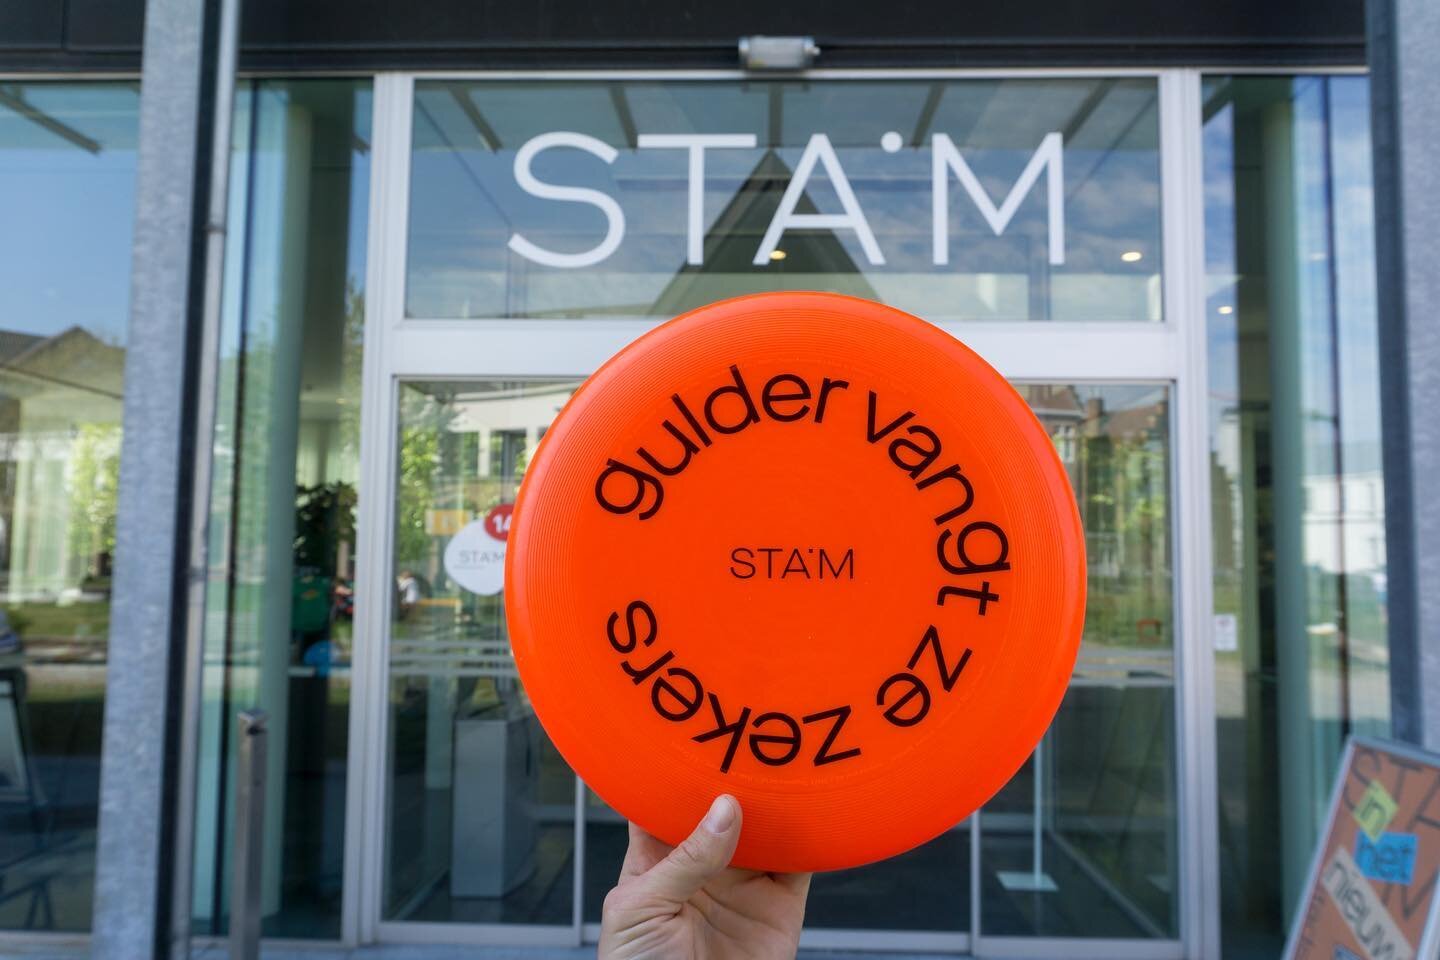 &ldquo;Gulder vangt ze zekers&rdquo;
Wolkenkrabbers frisbees nu beschikbaar bij @stamgent.
Schuun design by @bureauboschberg 
#wolkenkrabbersclub #frisbeefun